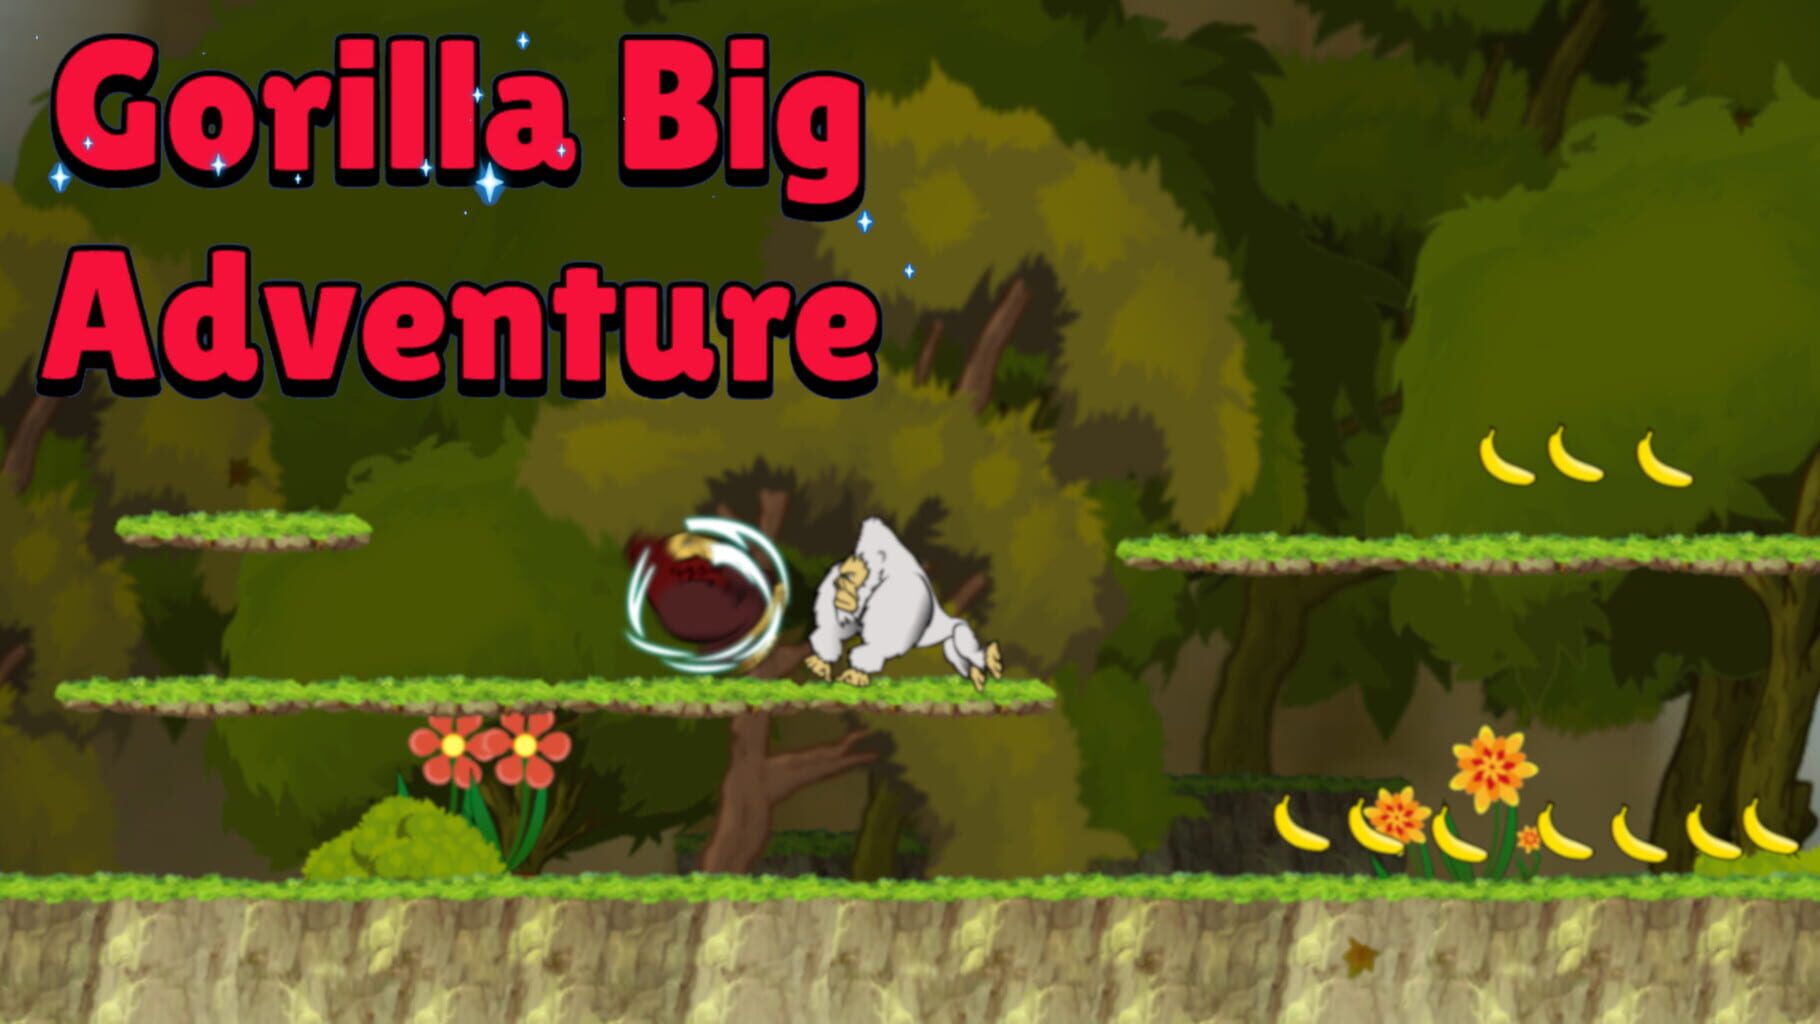 Gorilla Big Adventure artwork